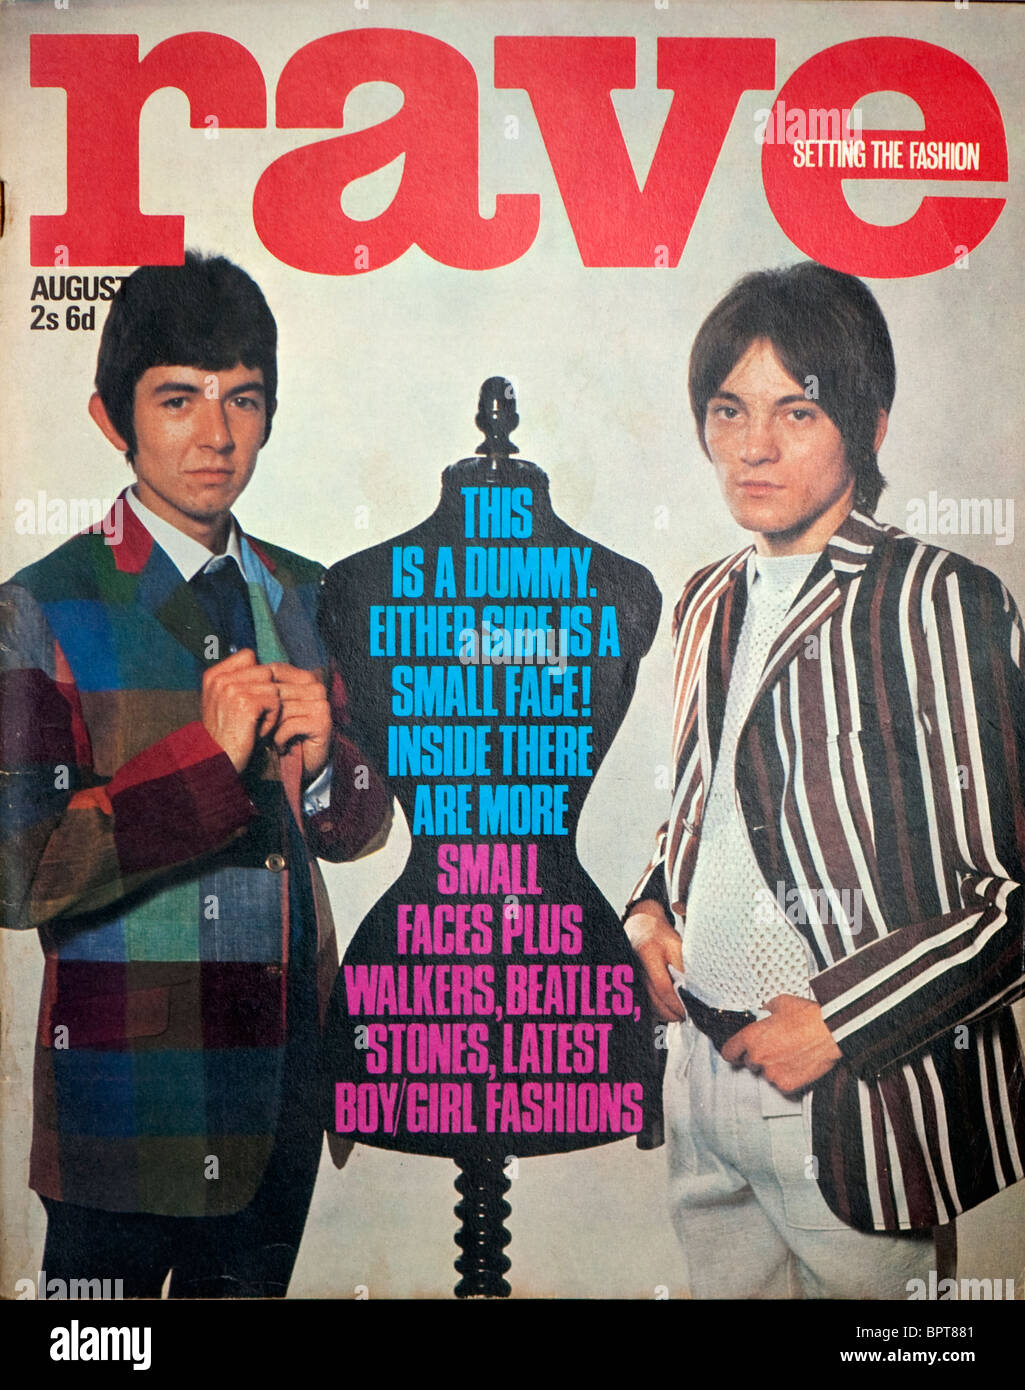 Couverture du magazine des années 60 avec la rave de petits visages. Banque D'Images